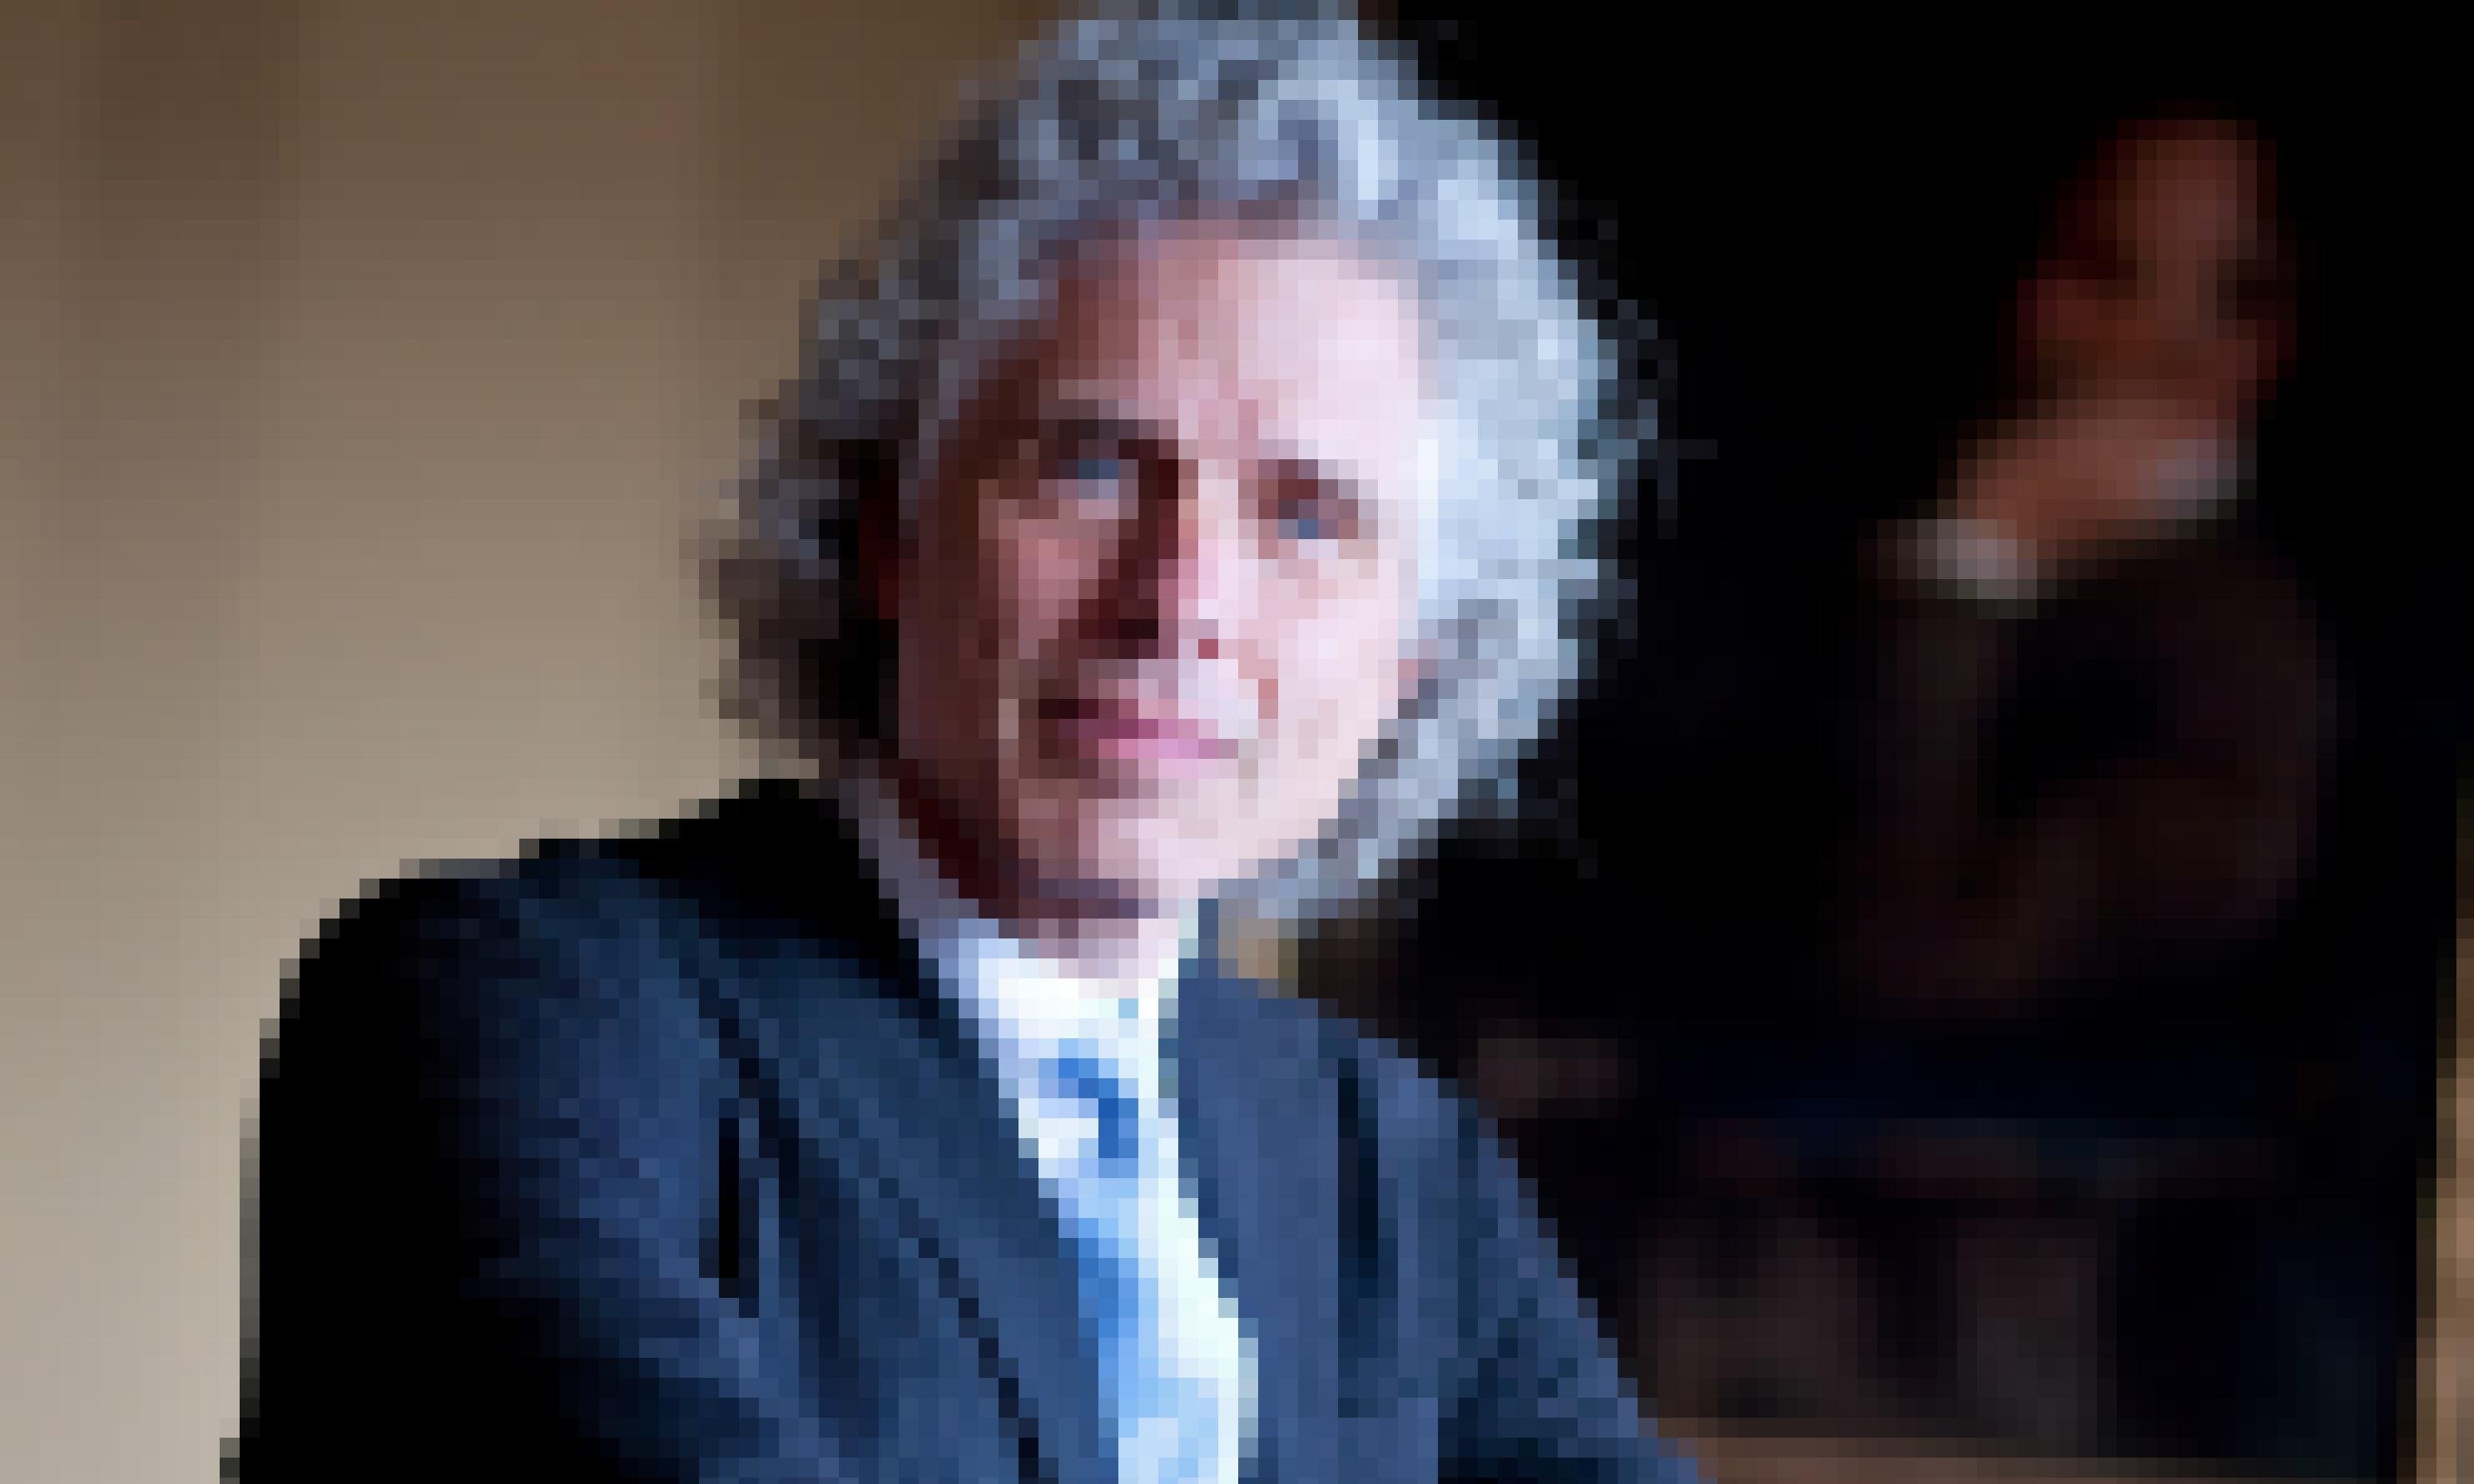 Steven Pinker, Jahrgang 1954, ist Psychologe an der Harvard University. Sein Buch „Enlightenment Now“ erscheint am 26. September unter dem Titel „Aufklärung jetzt: Für Vernunft, Wissenschaft, Humanismus und Fortschritt. Eine Verteidigung“ im S. Fischer-Verlag.